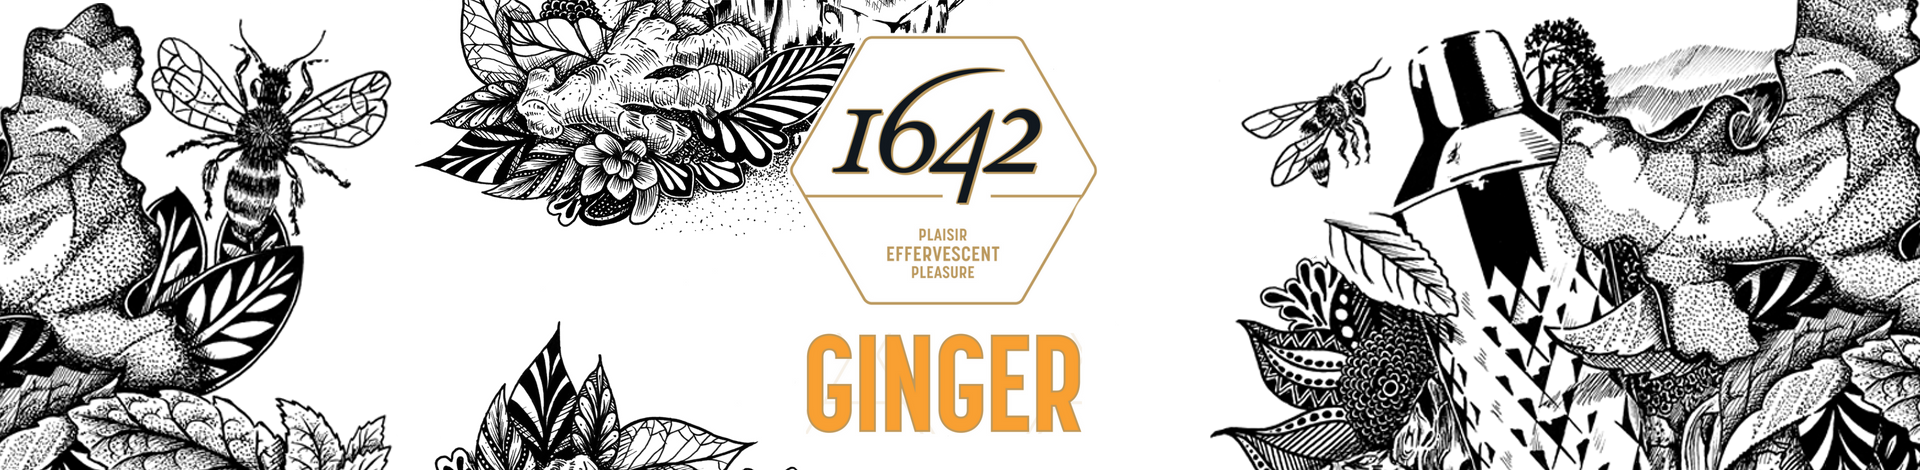 Ginger beer 1642